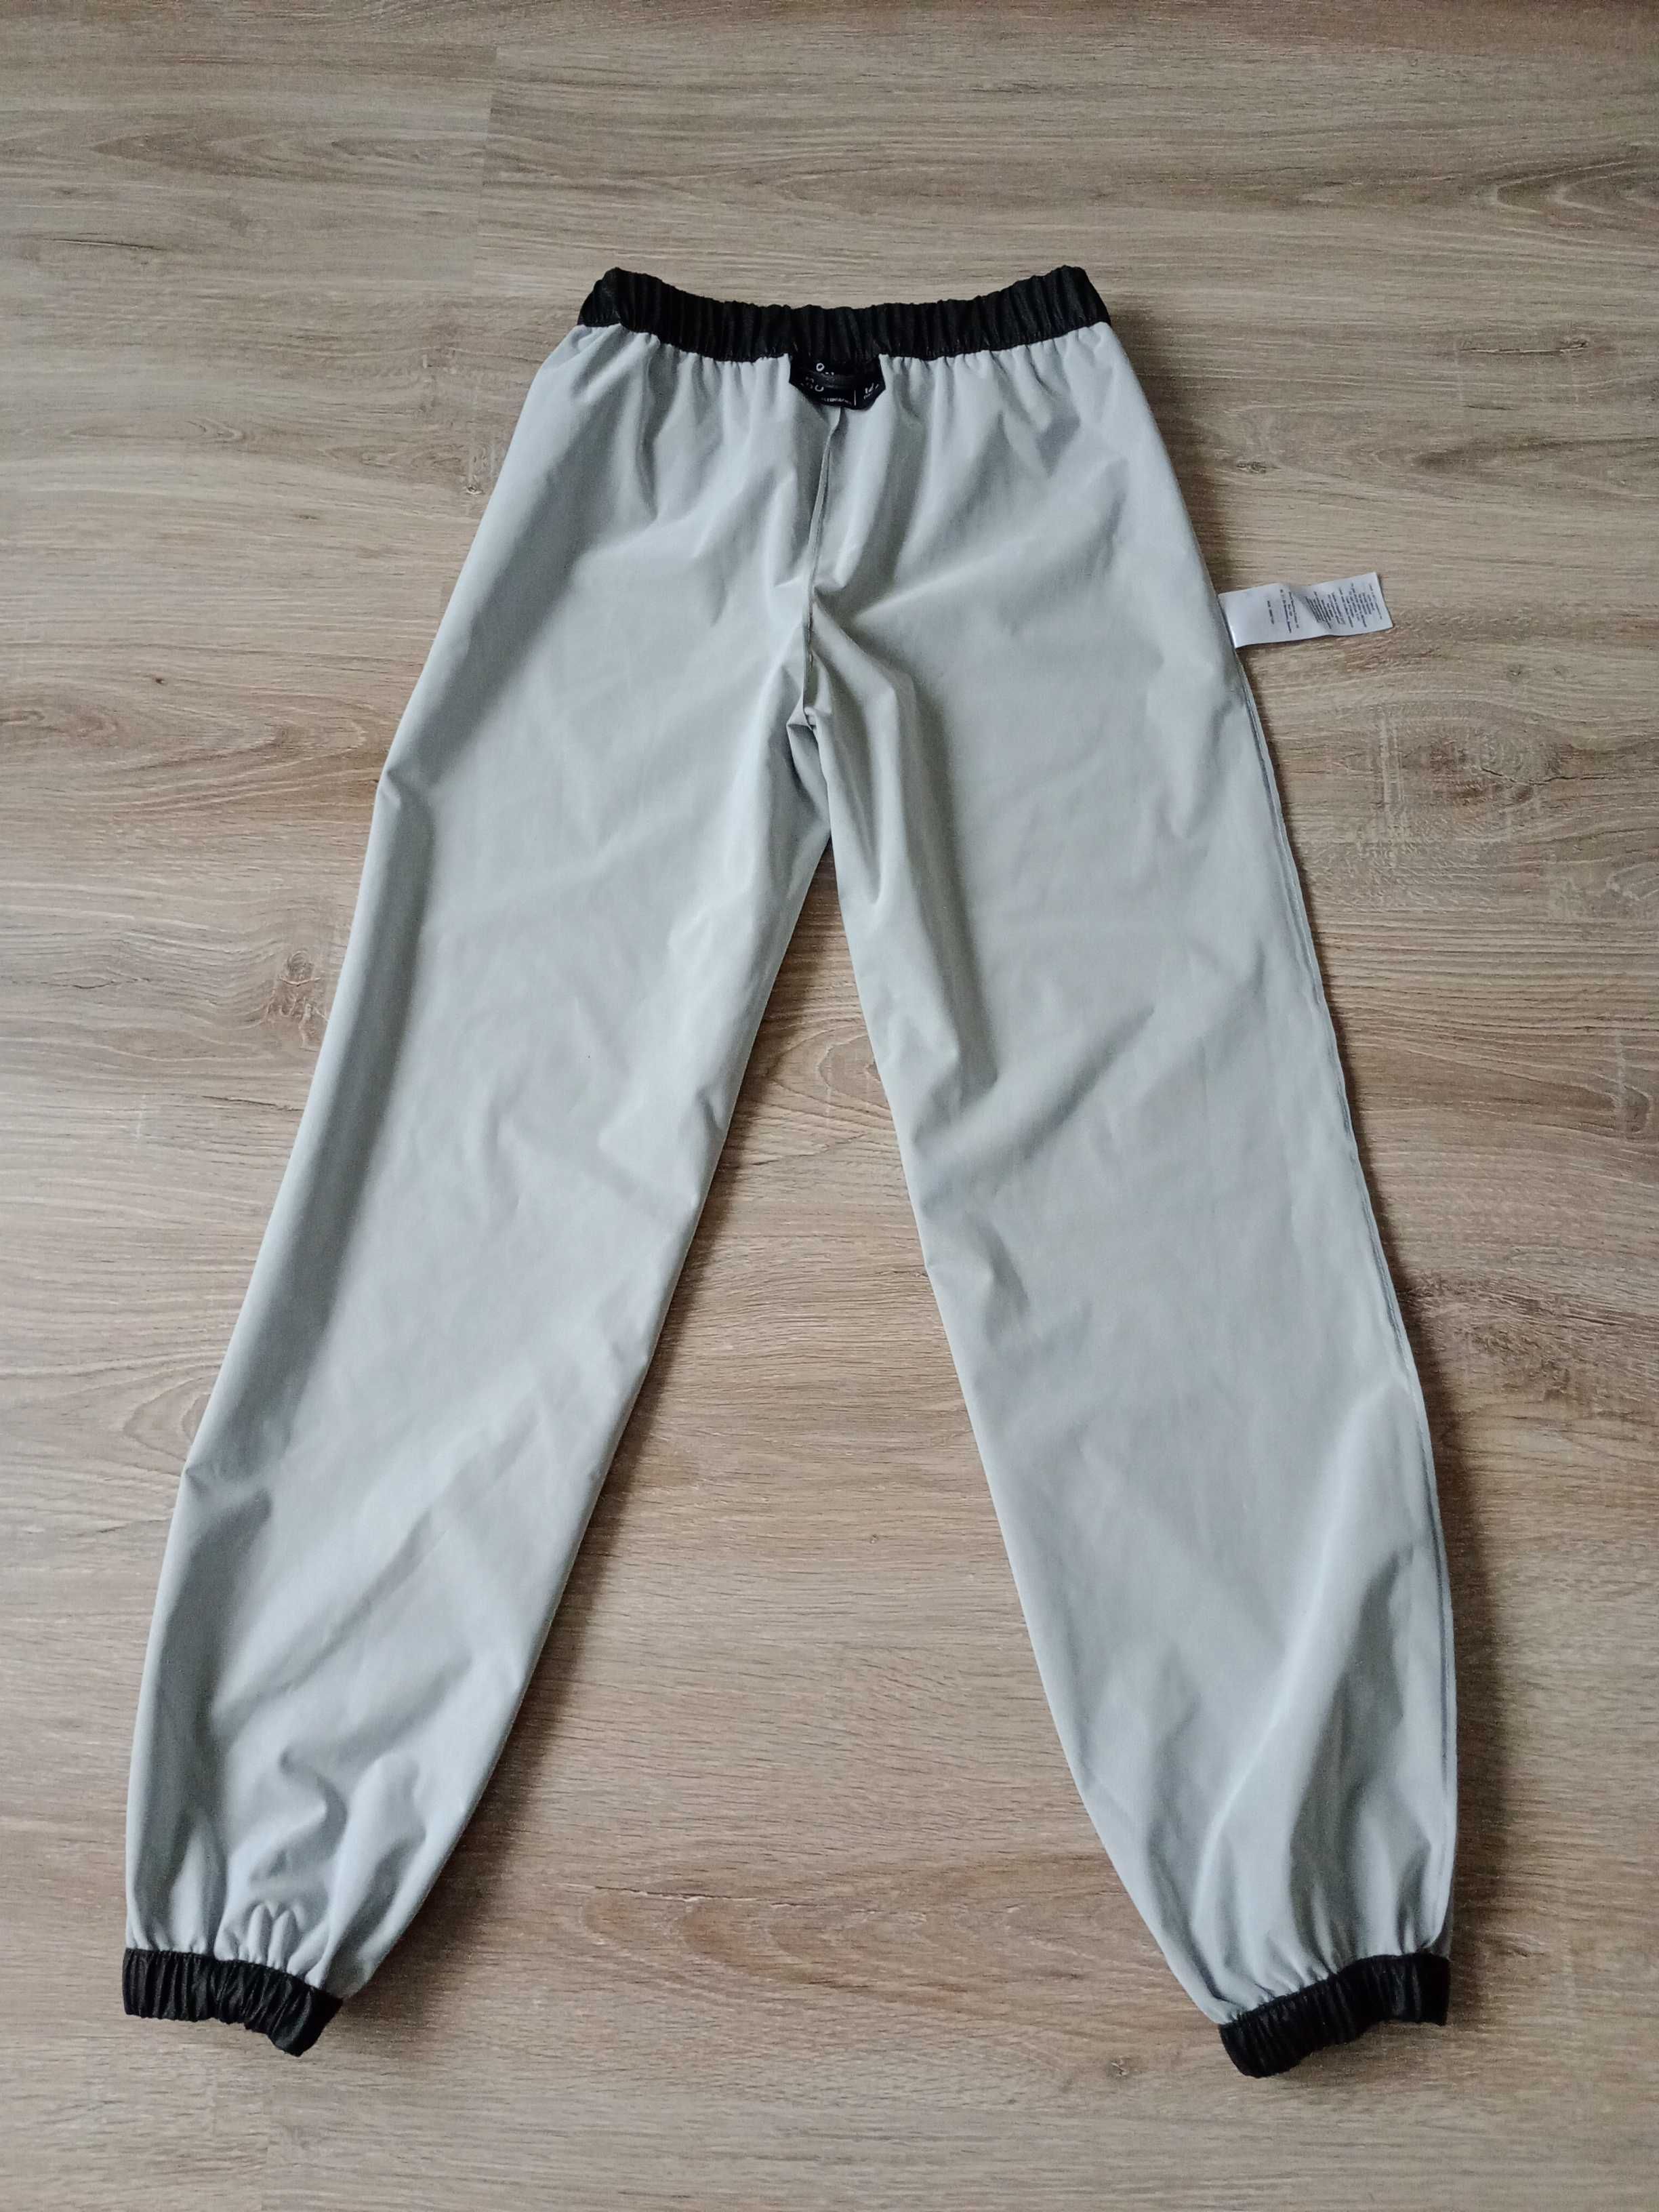 Spodnie gumowane przeciwdeszczowe Neo Mon Do rozmiar 152